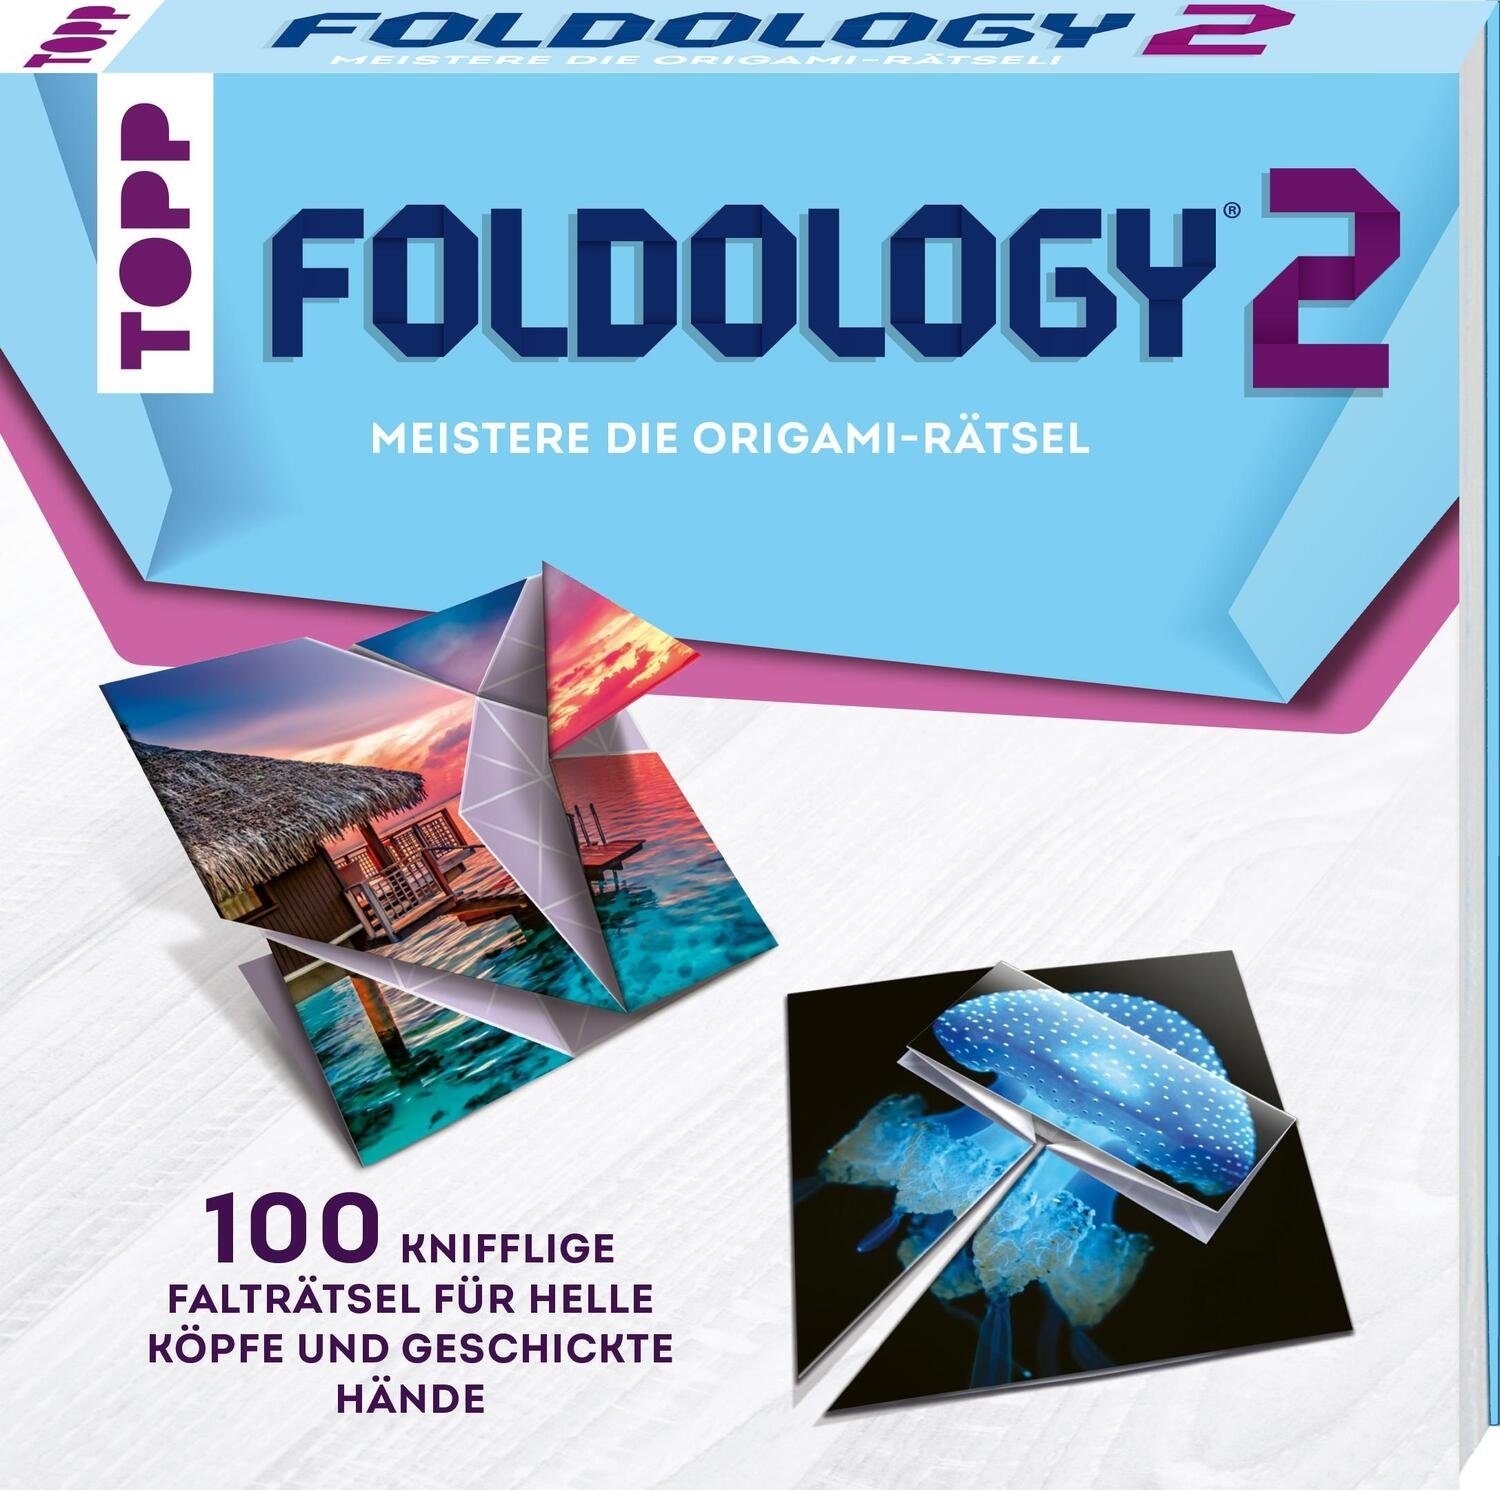 Frech Verlag Puzzle Foldology 2 - Meistere die Origami-Rätsel!, Puzzleteile